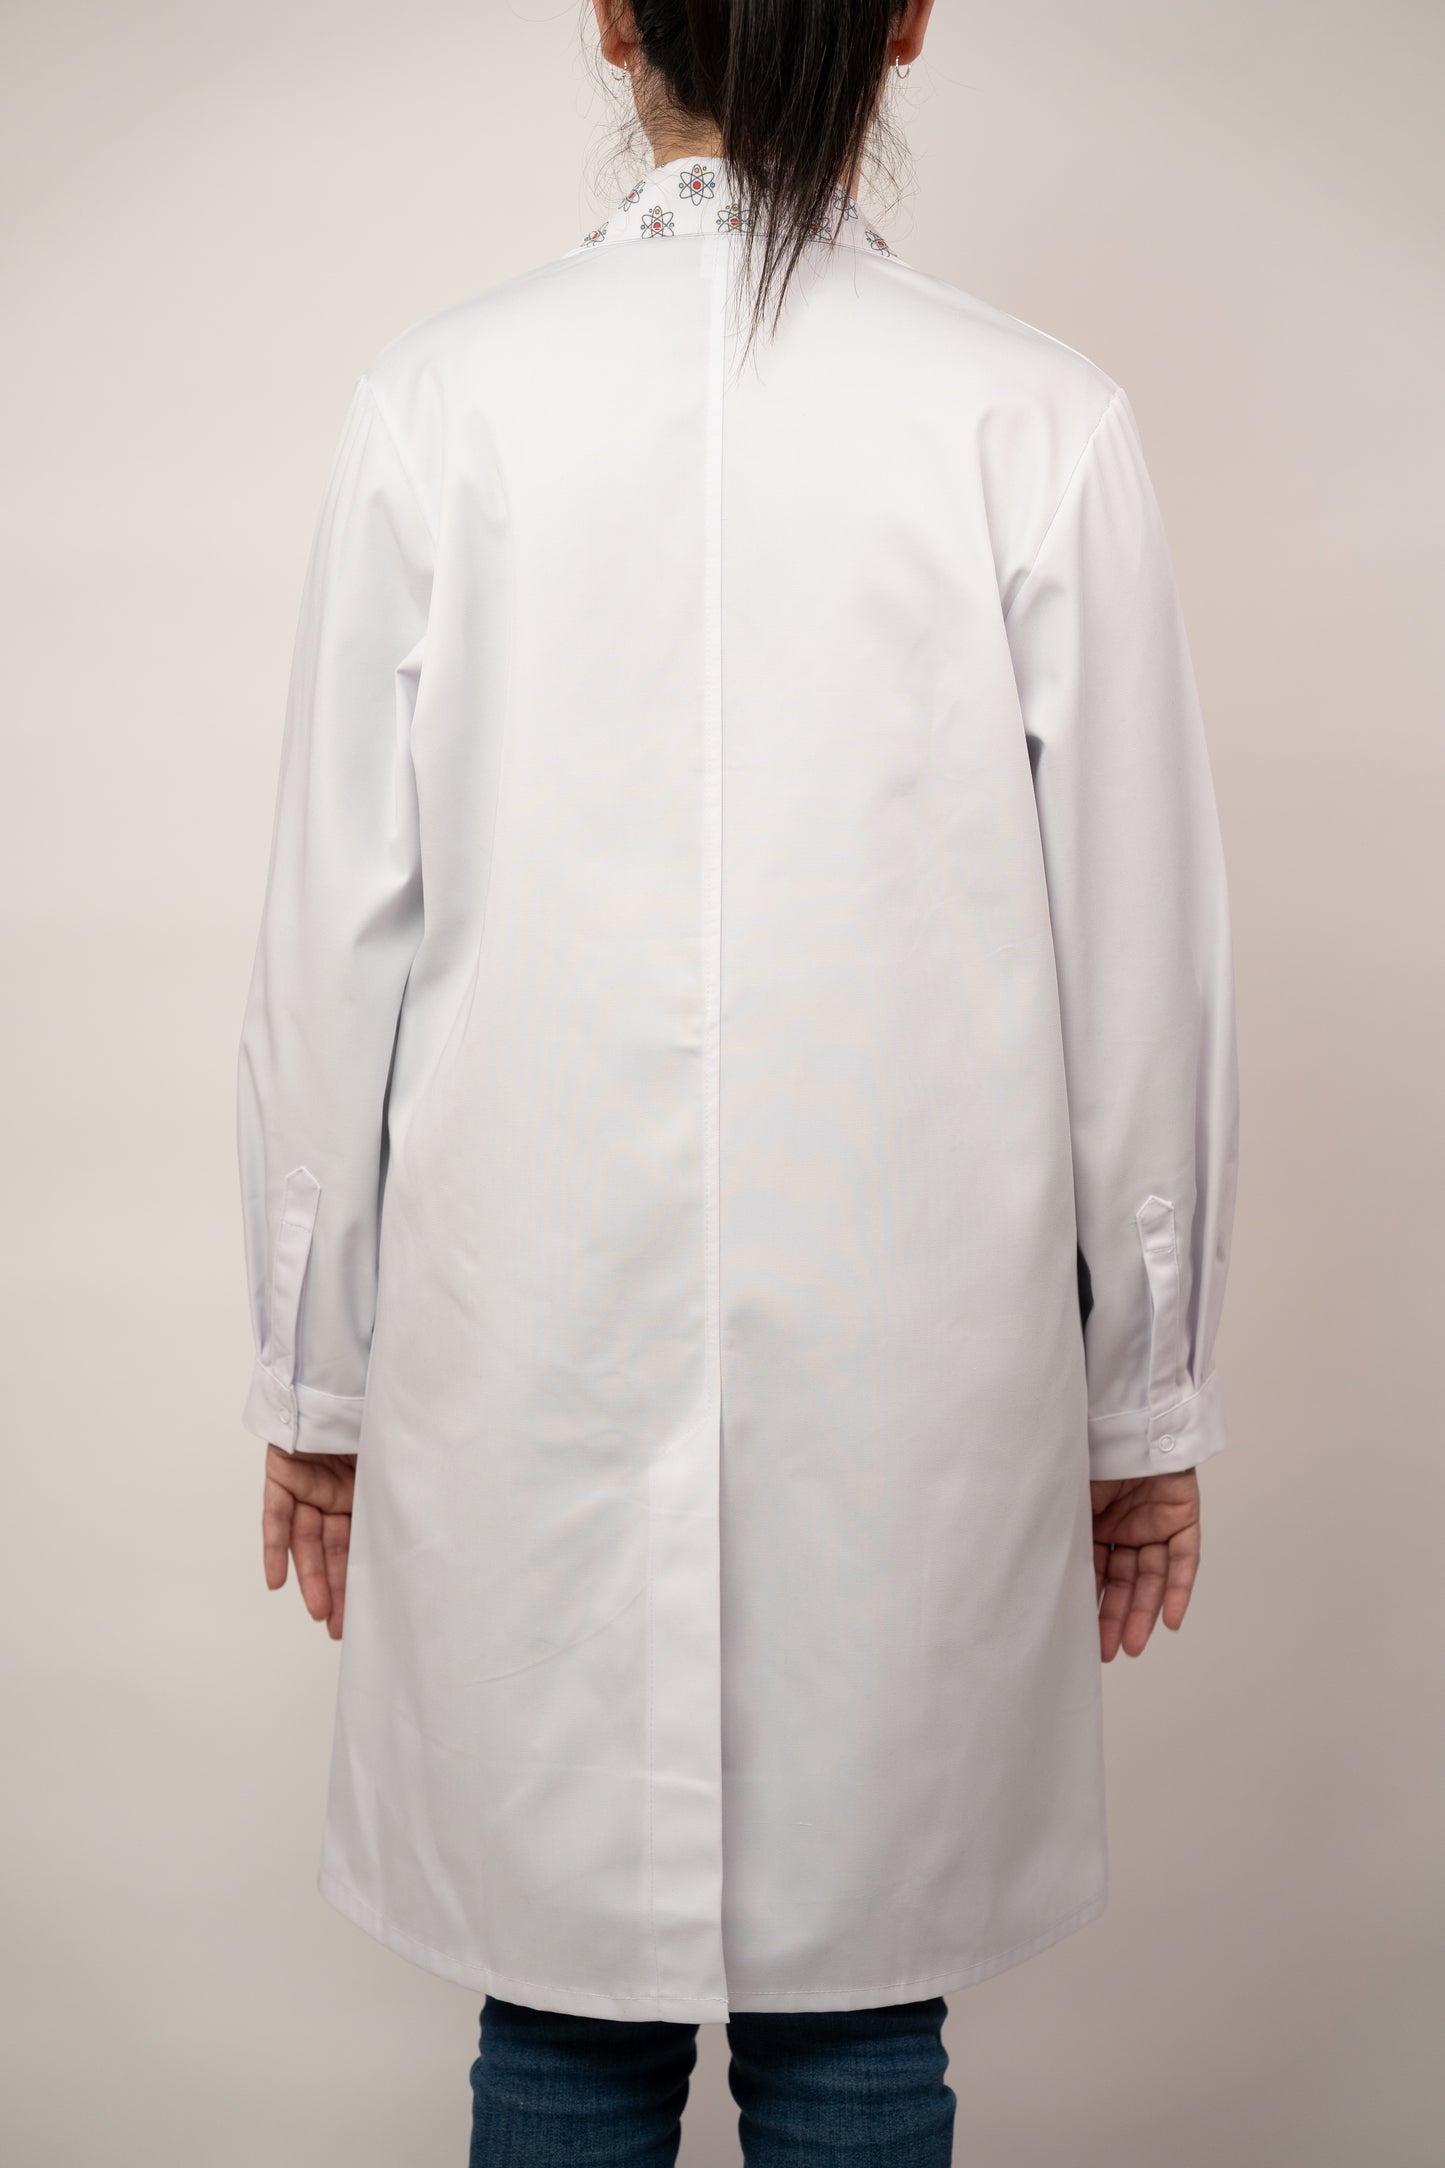 'Atom' lab coat